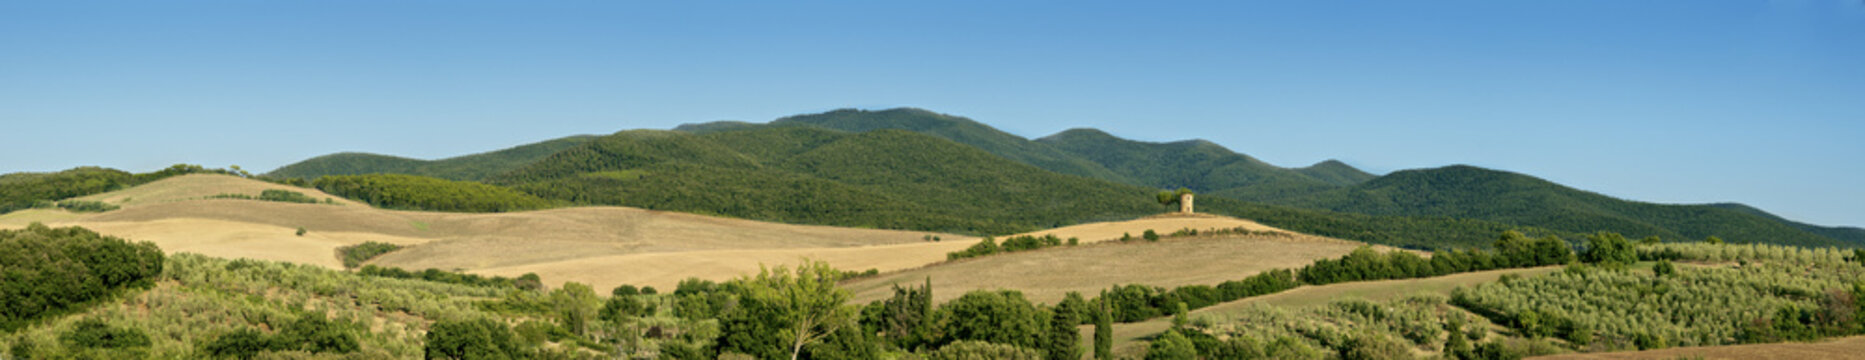 Tuscany landscape, the countryside of Maremma